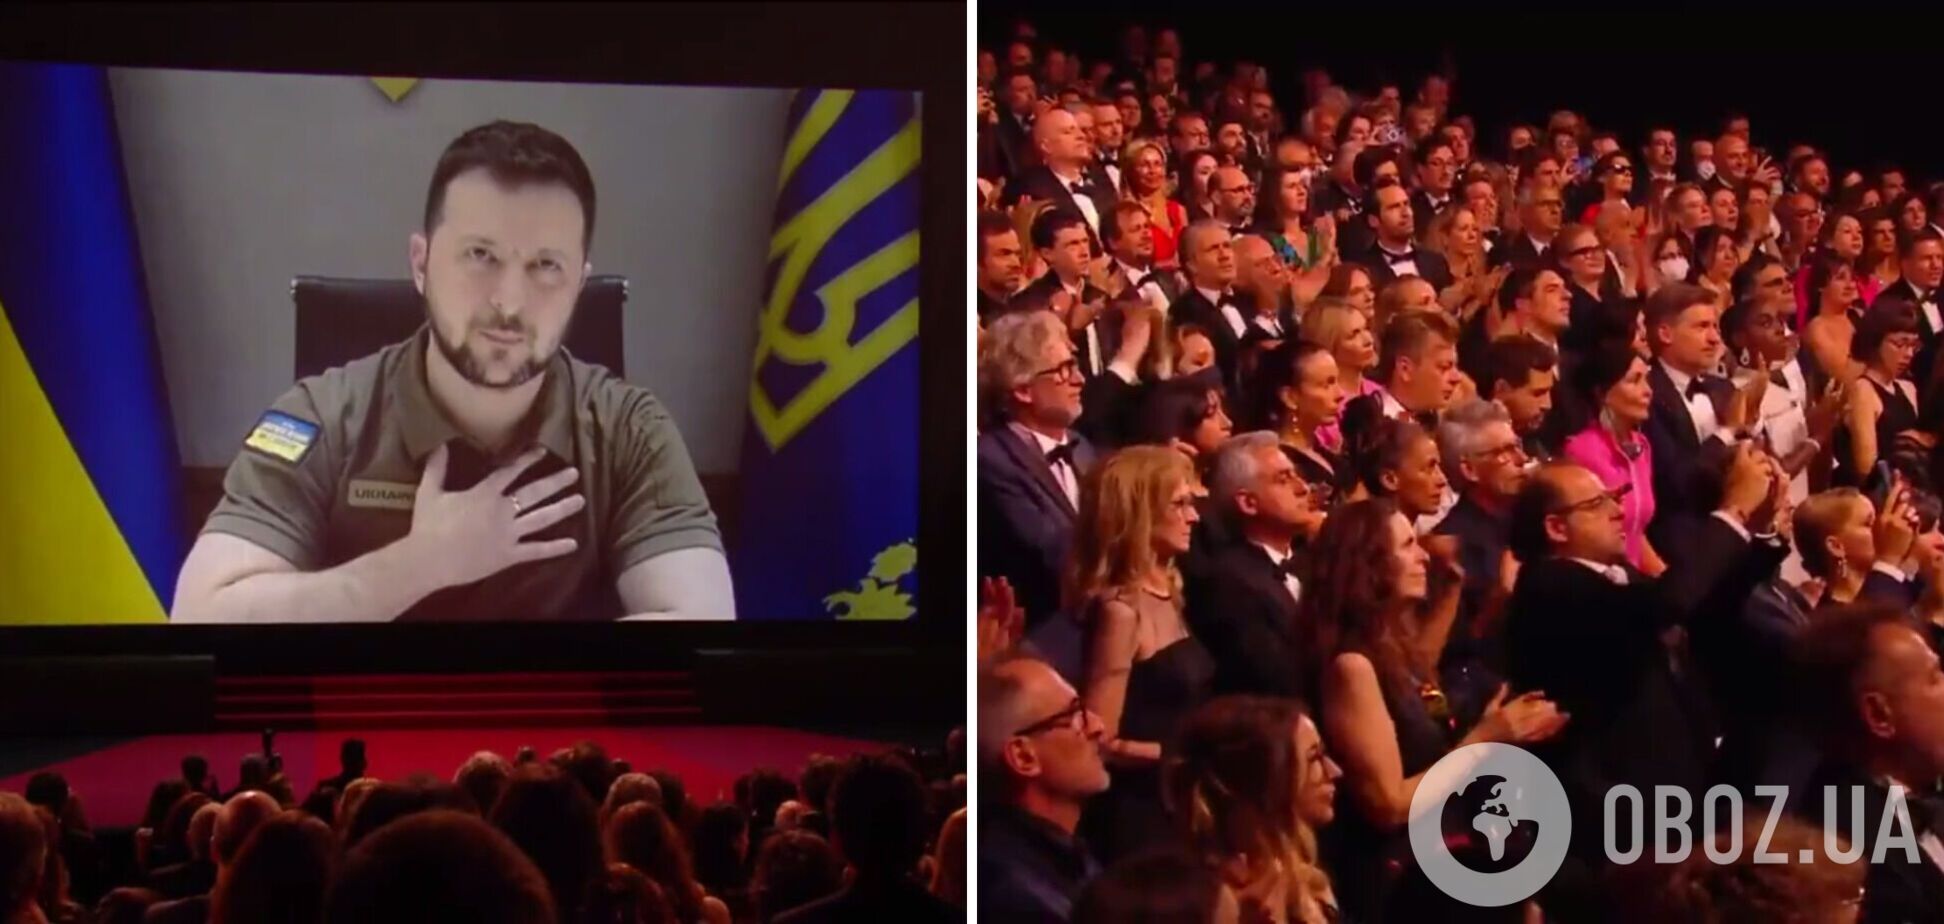 'Ненависть исчезнет, а диктаторы умрут': Зеленский выступил на Каннском фестивале и призвал кино не молчать